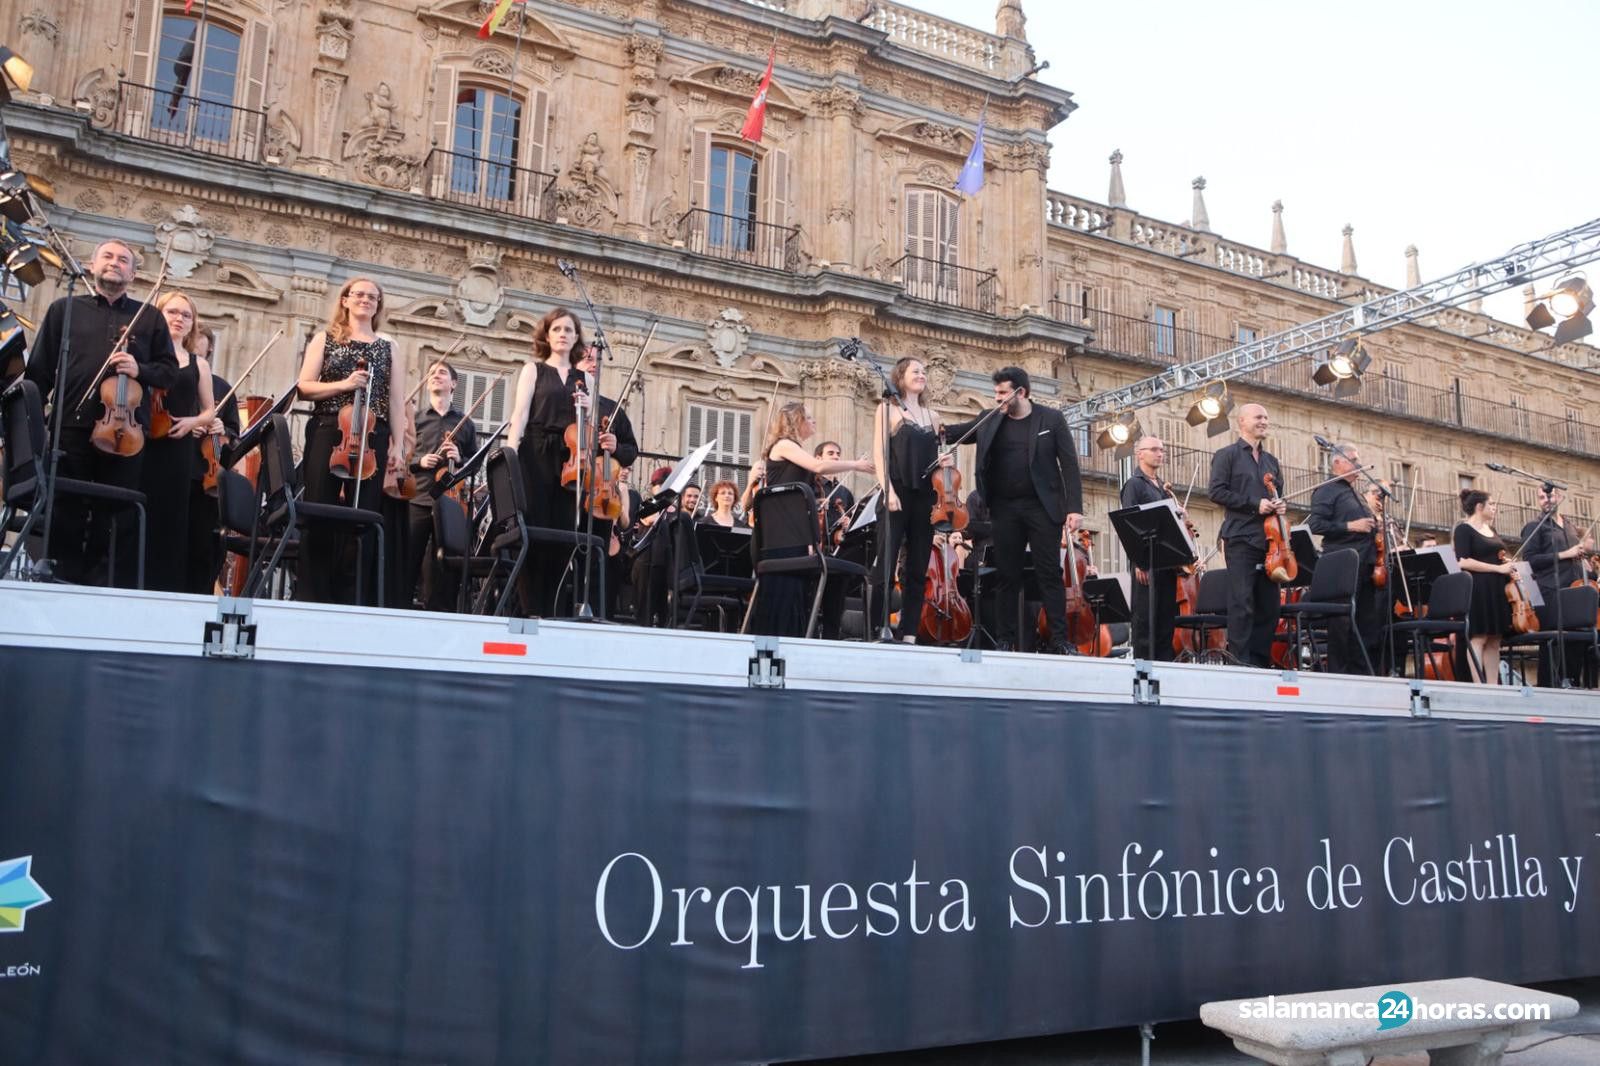  Concierto de la Orquesta Sinfónica de Castilla y León en la Plaza Mayor (22) 